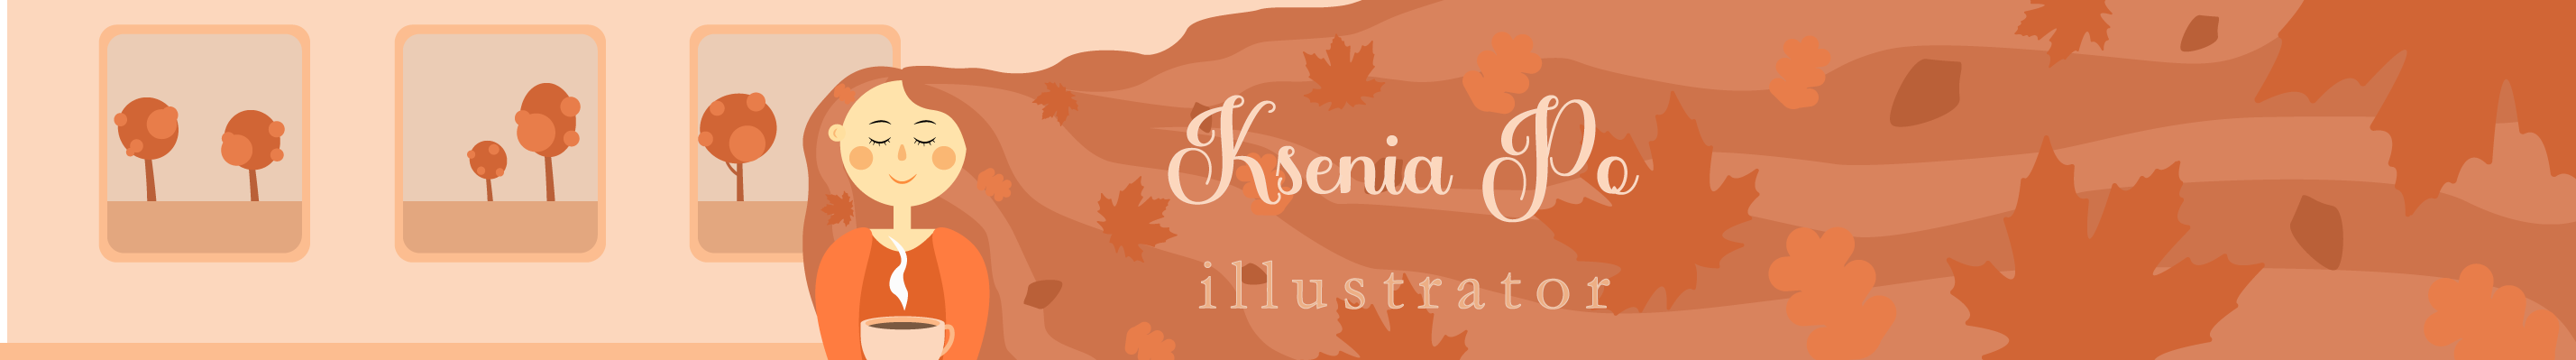 Ksenia Po's profile banner